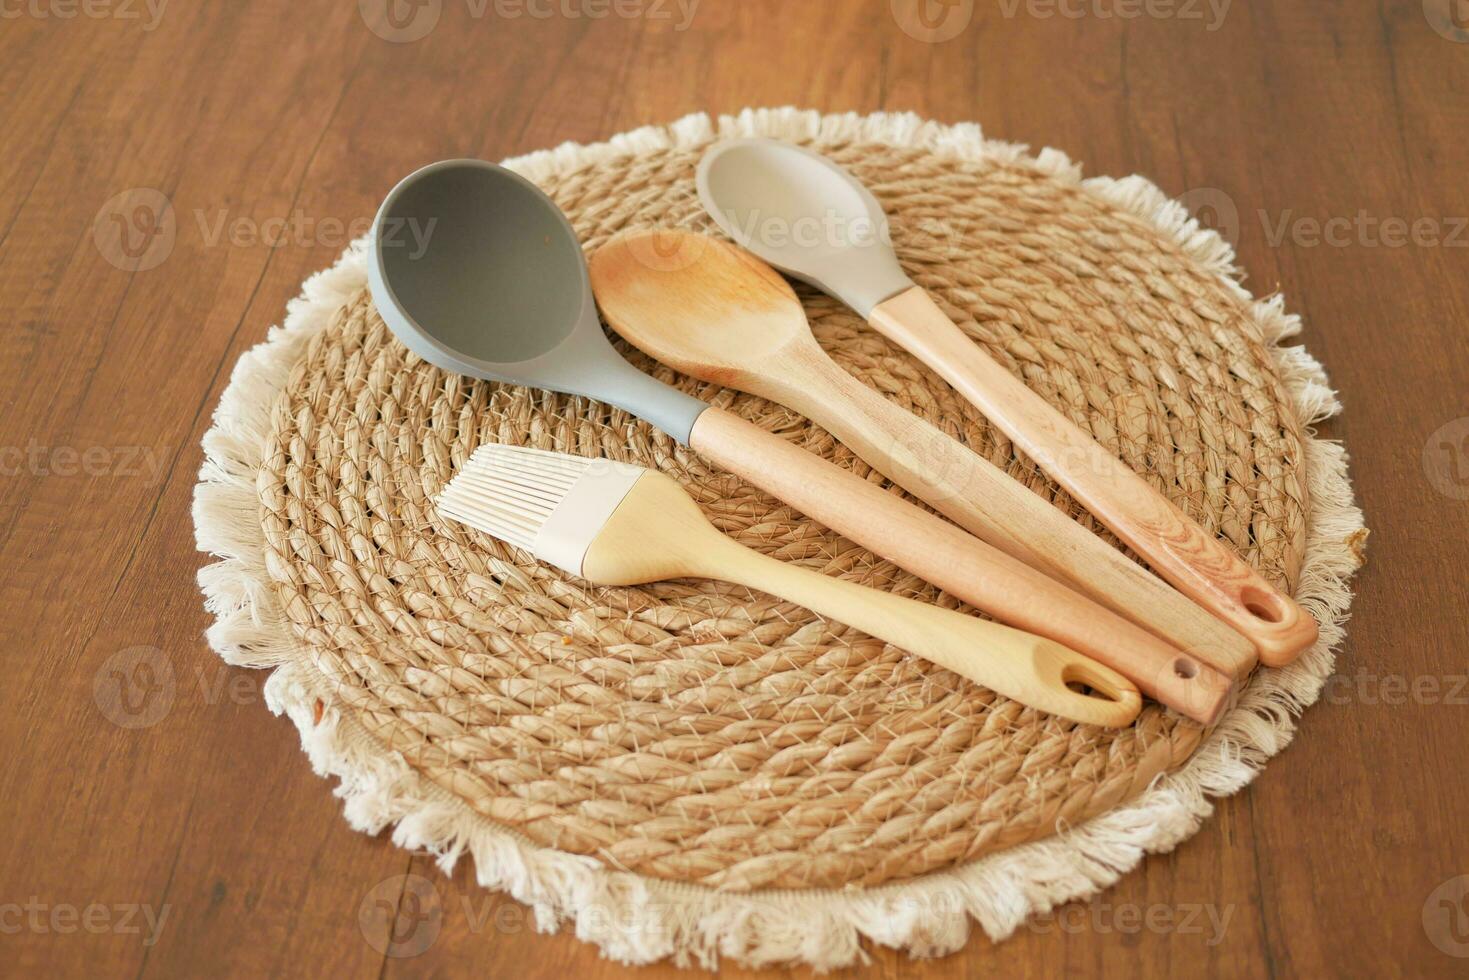 fourchette et cuillère à couverts en bois sur une planche à découper sur la table photo